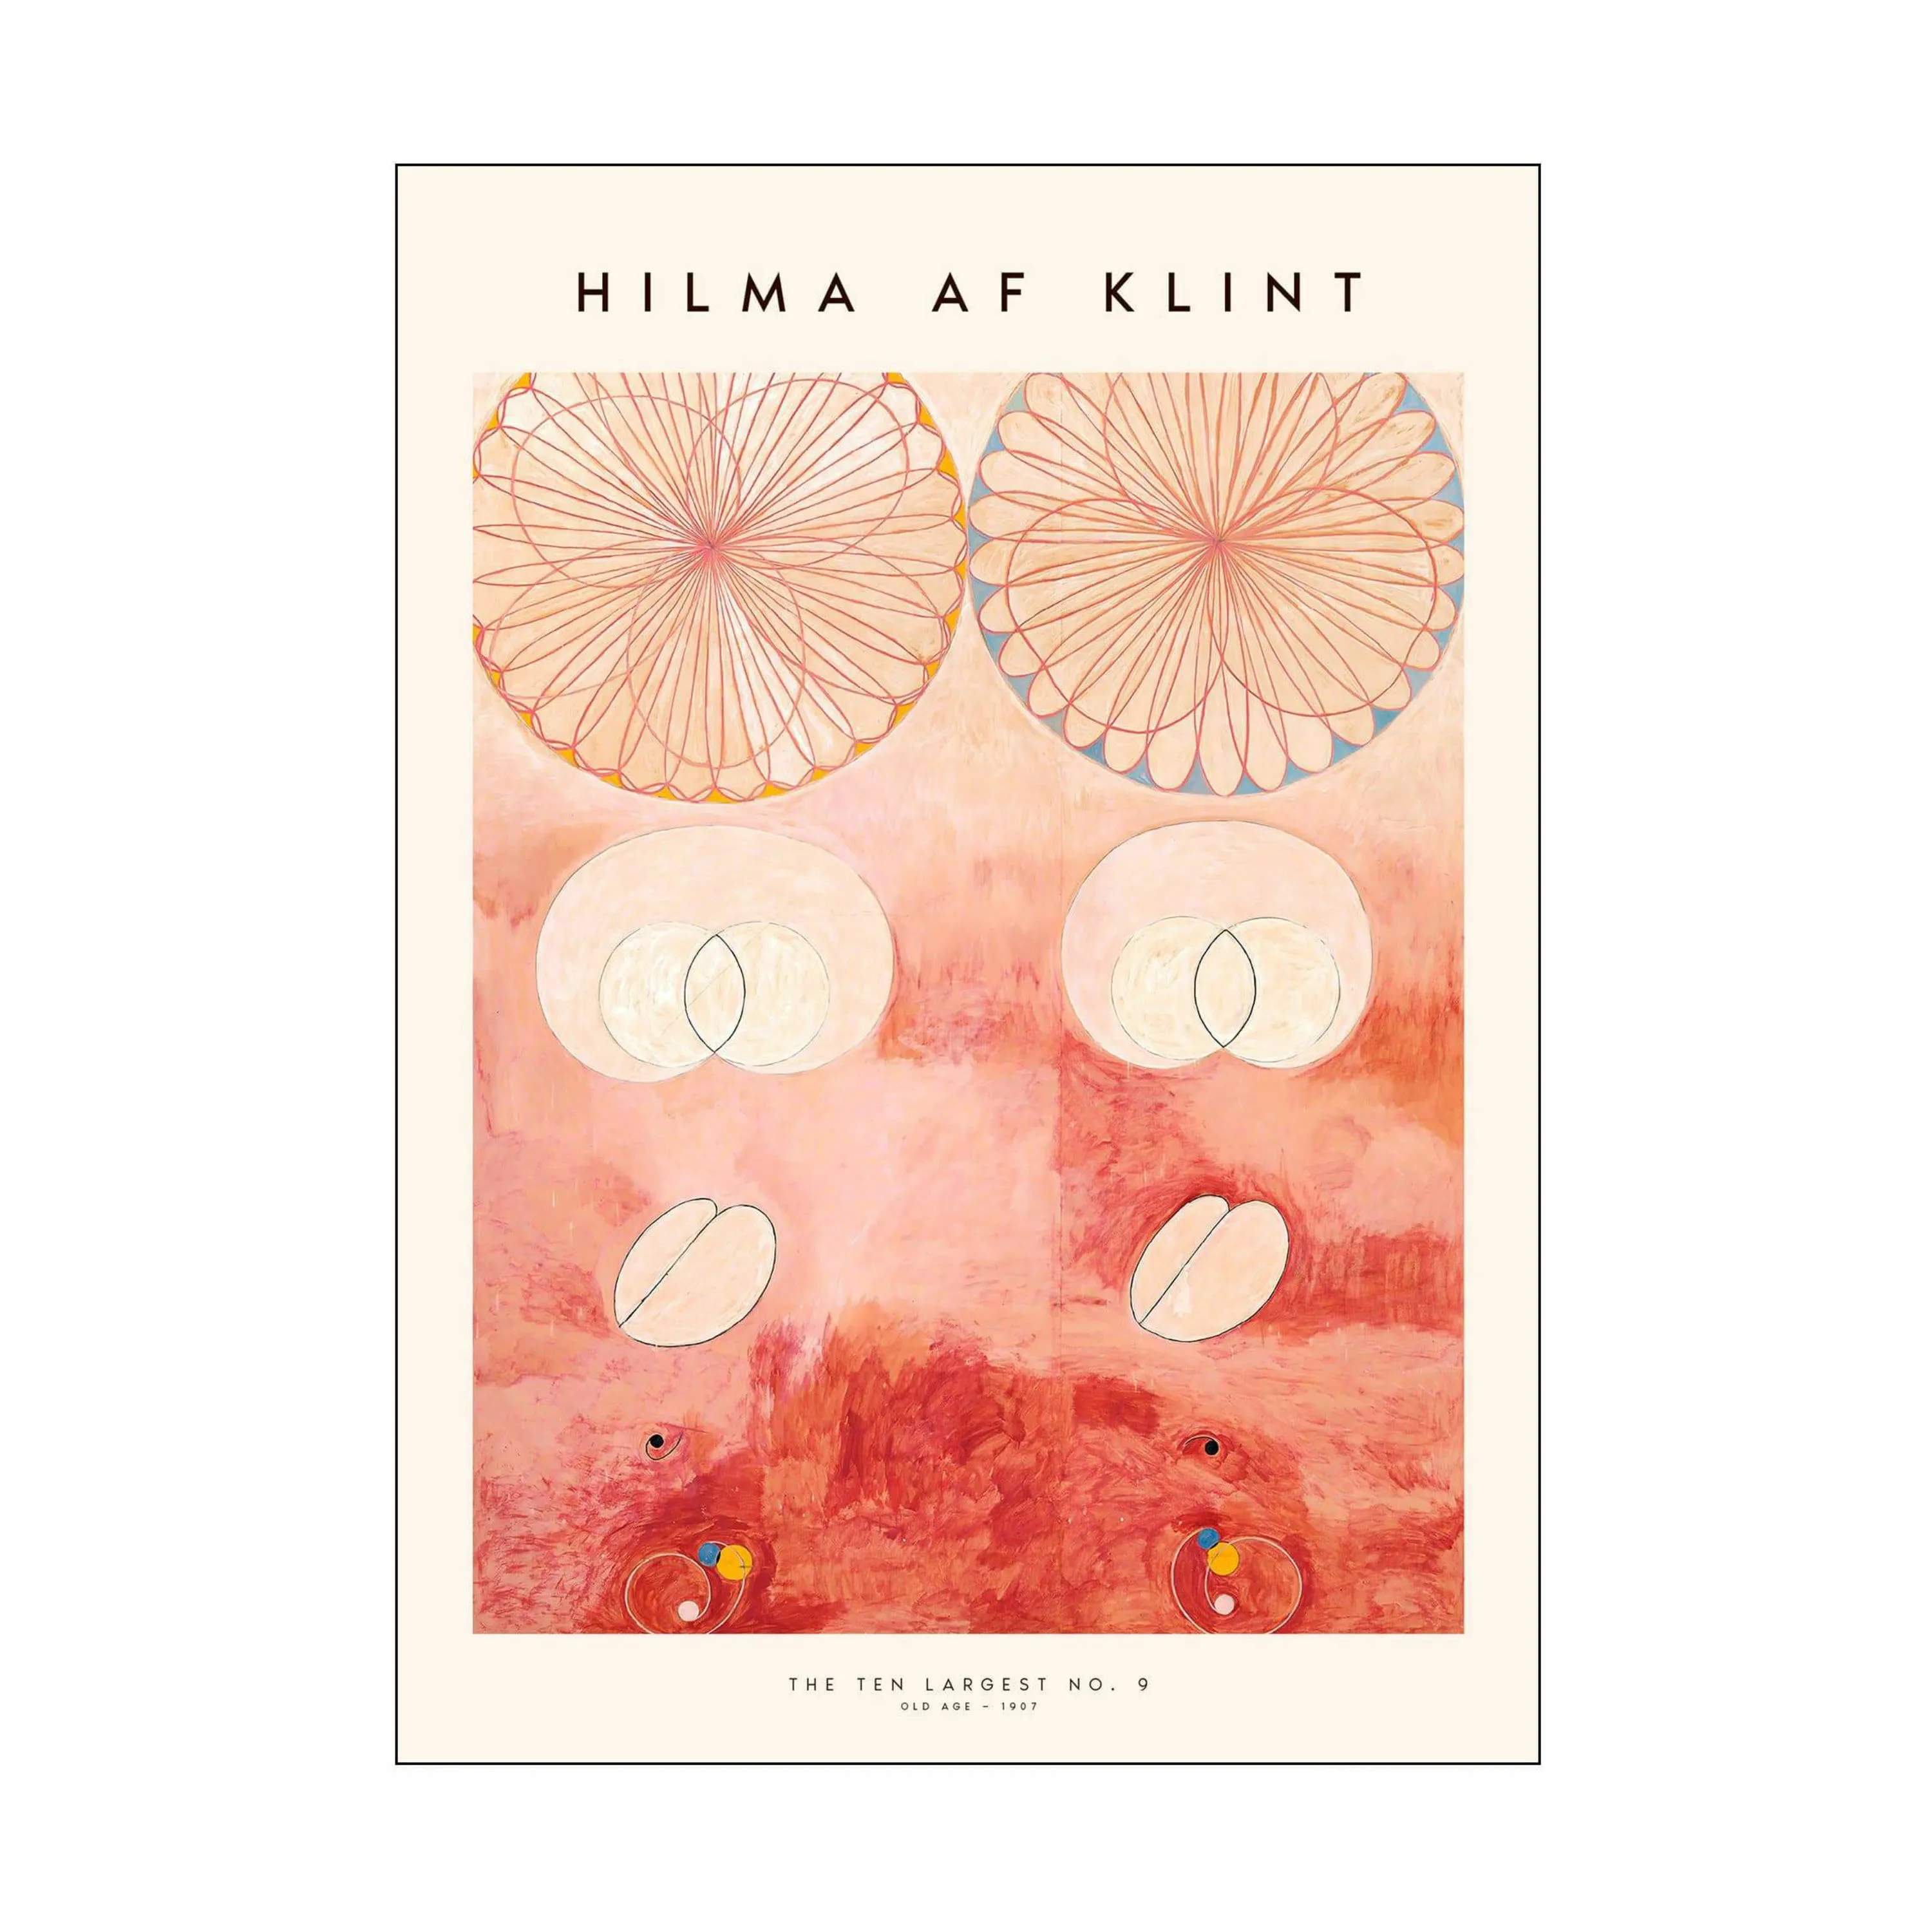 Hilma af Klint plakater Plakat - The ten largest no. 09